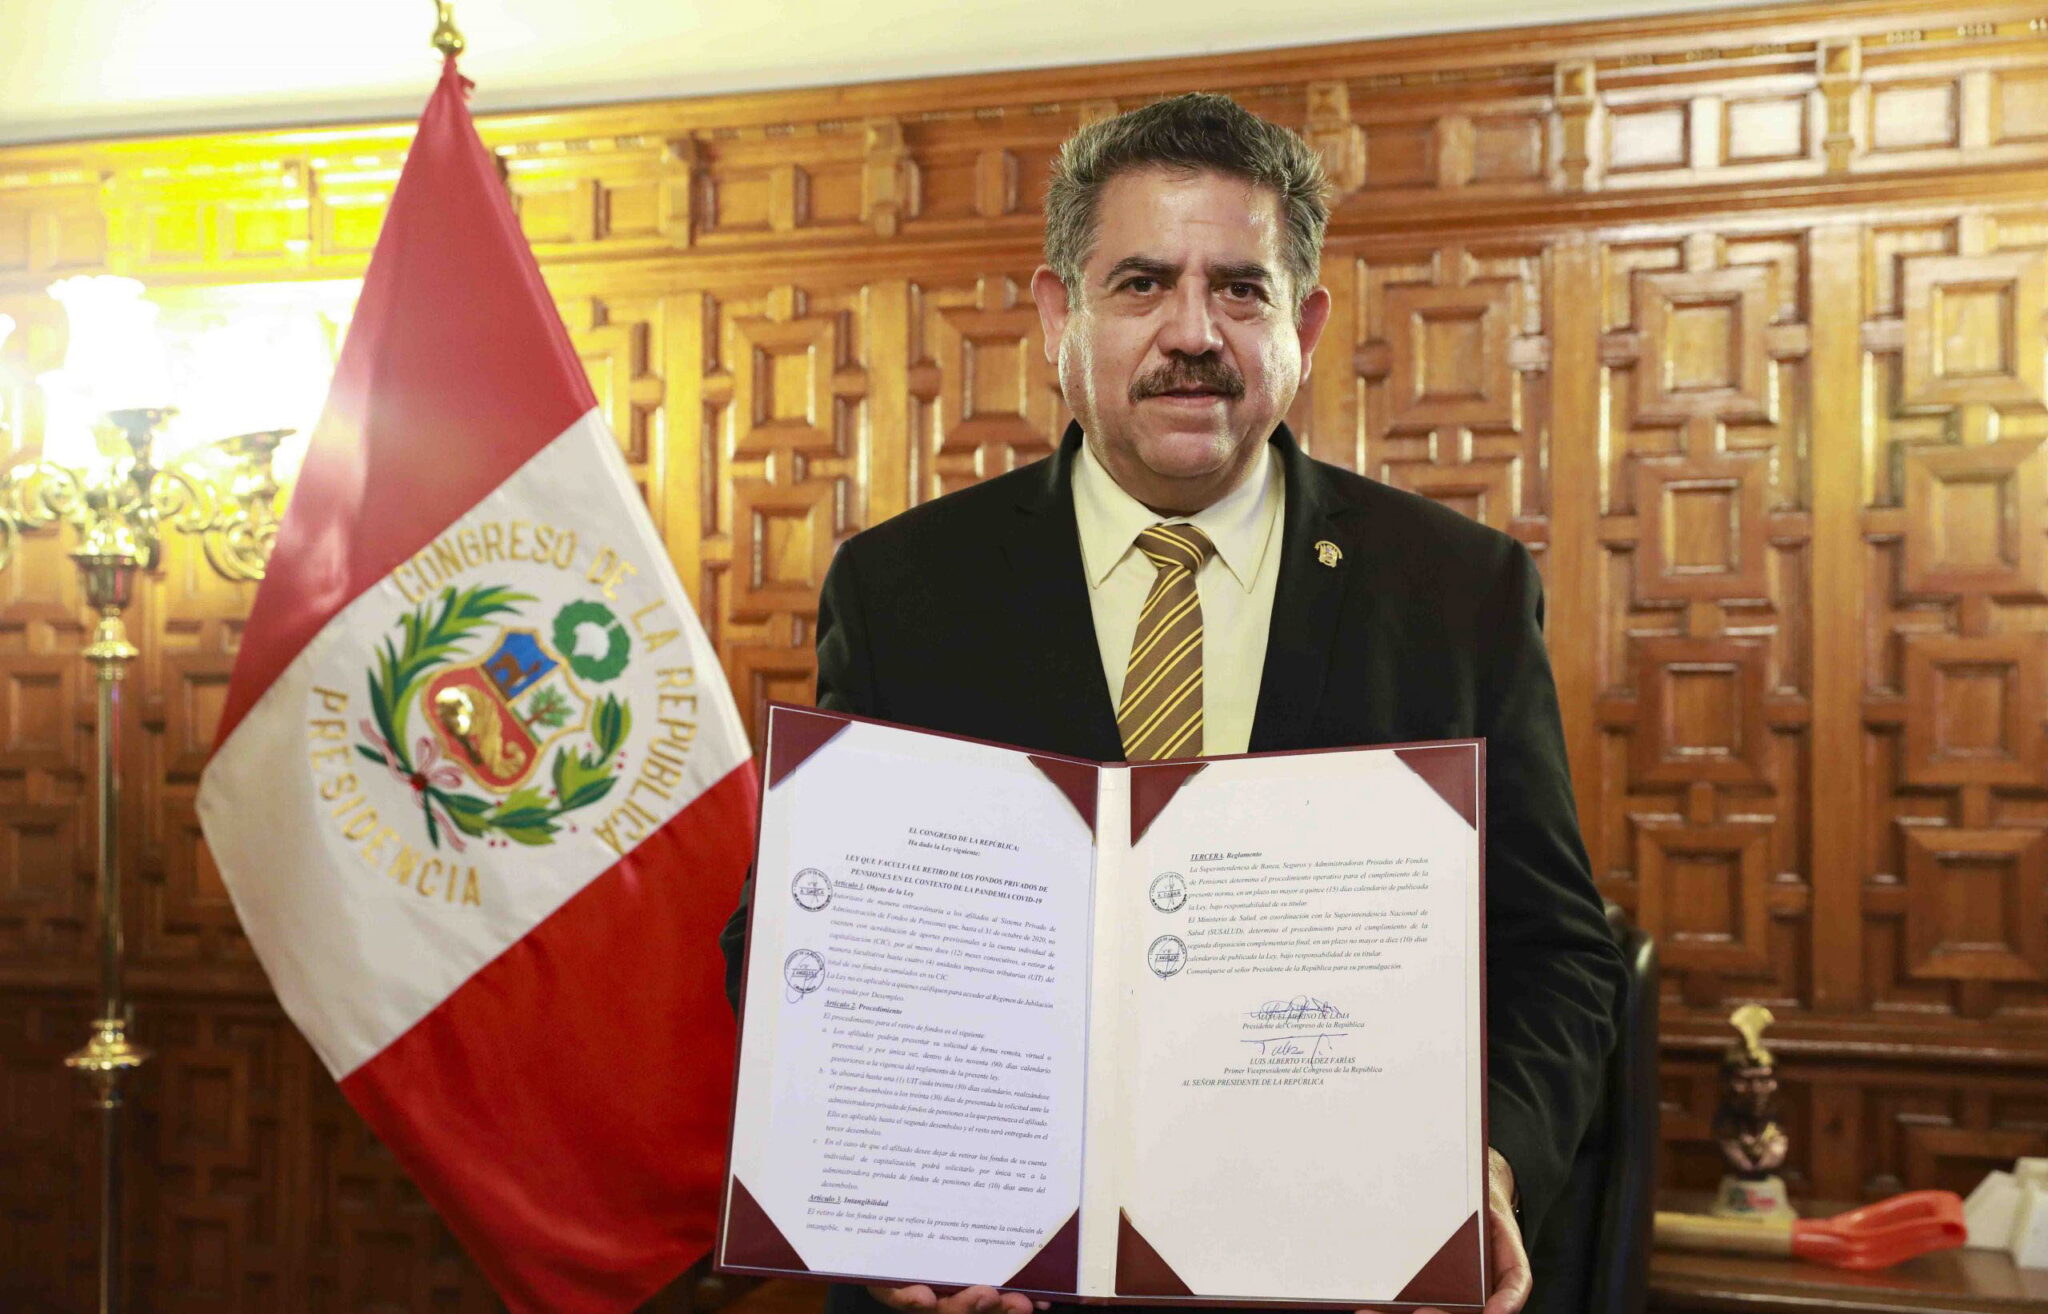 Мануэль Мерино де Лама при вступлении в должность президента Перу. Фото EPA/CONGRESS OF PERU/Scanpix/LETA